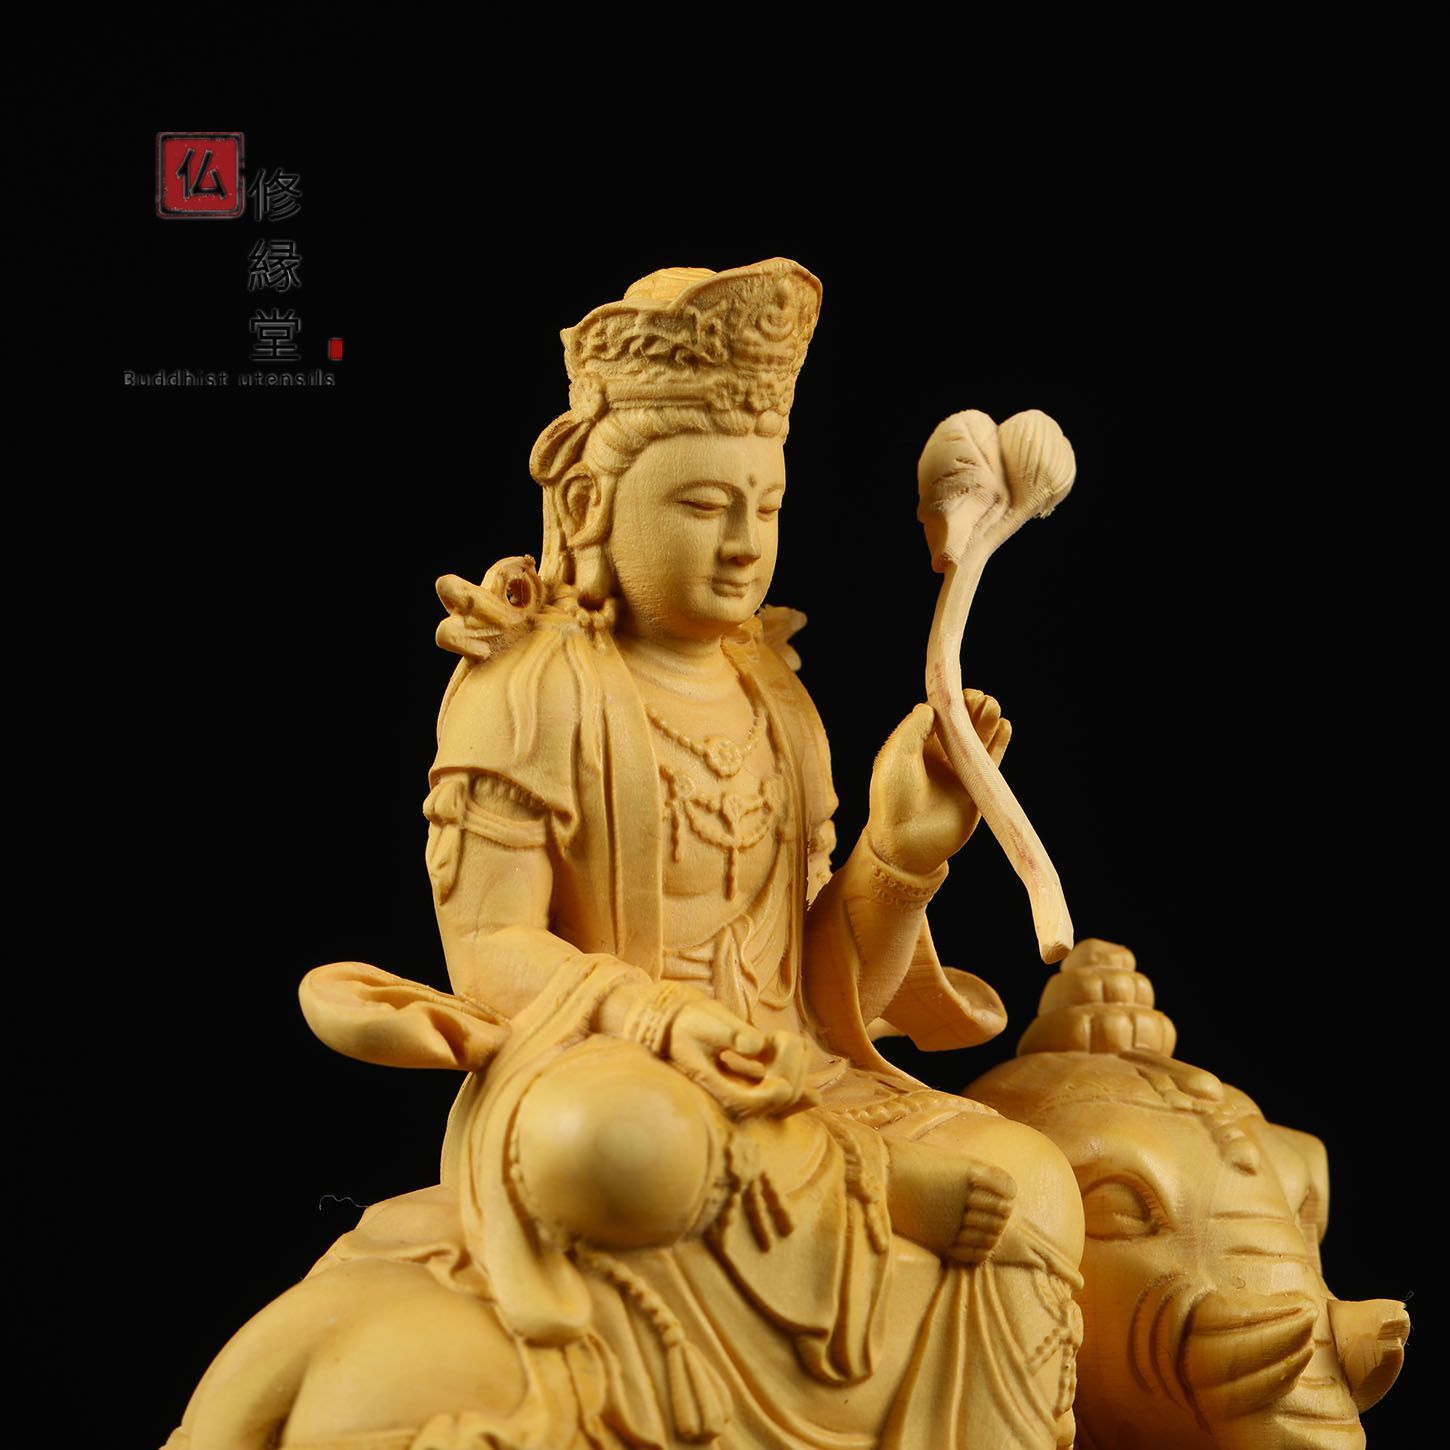 木彫り 仏像 文殊菩薩 普賢菩薩 座像 一式 彫刻 仏教工芸品 柘植材-